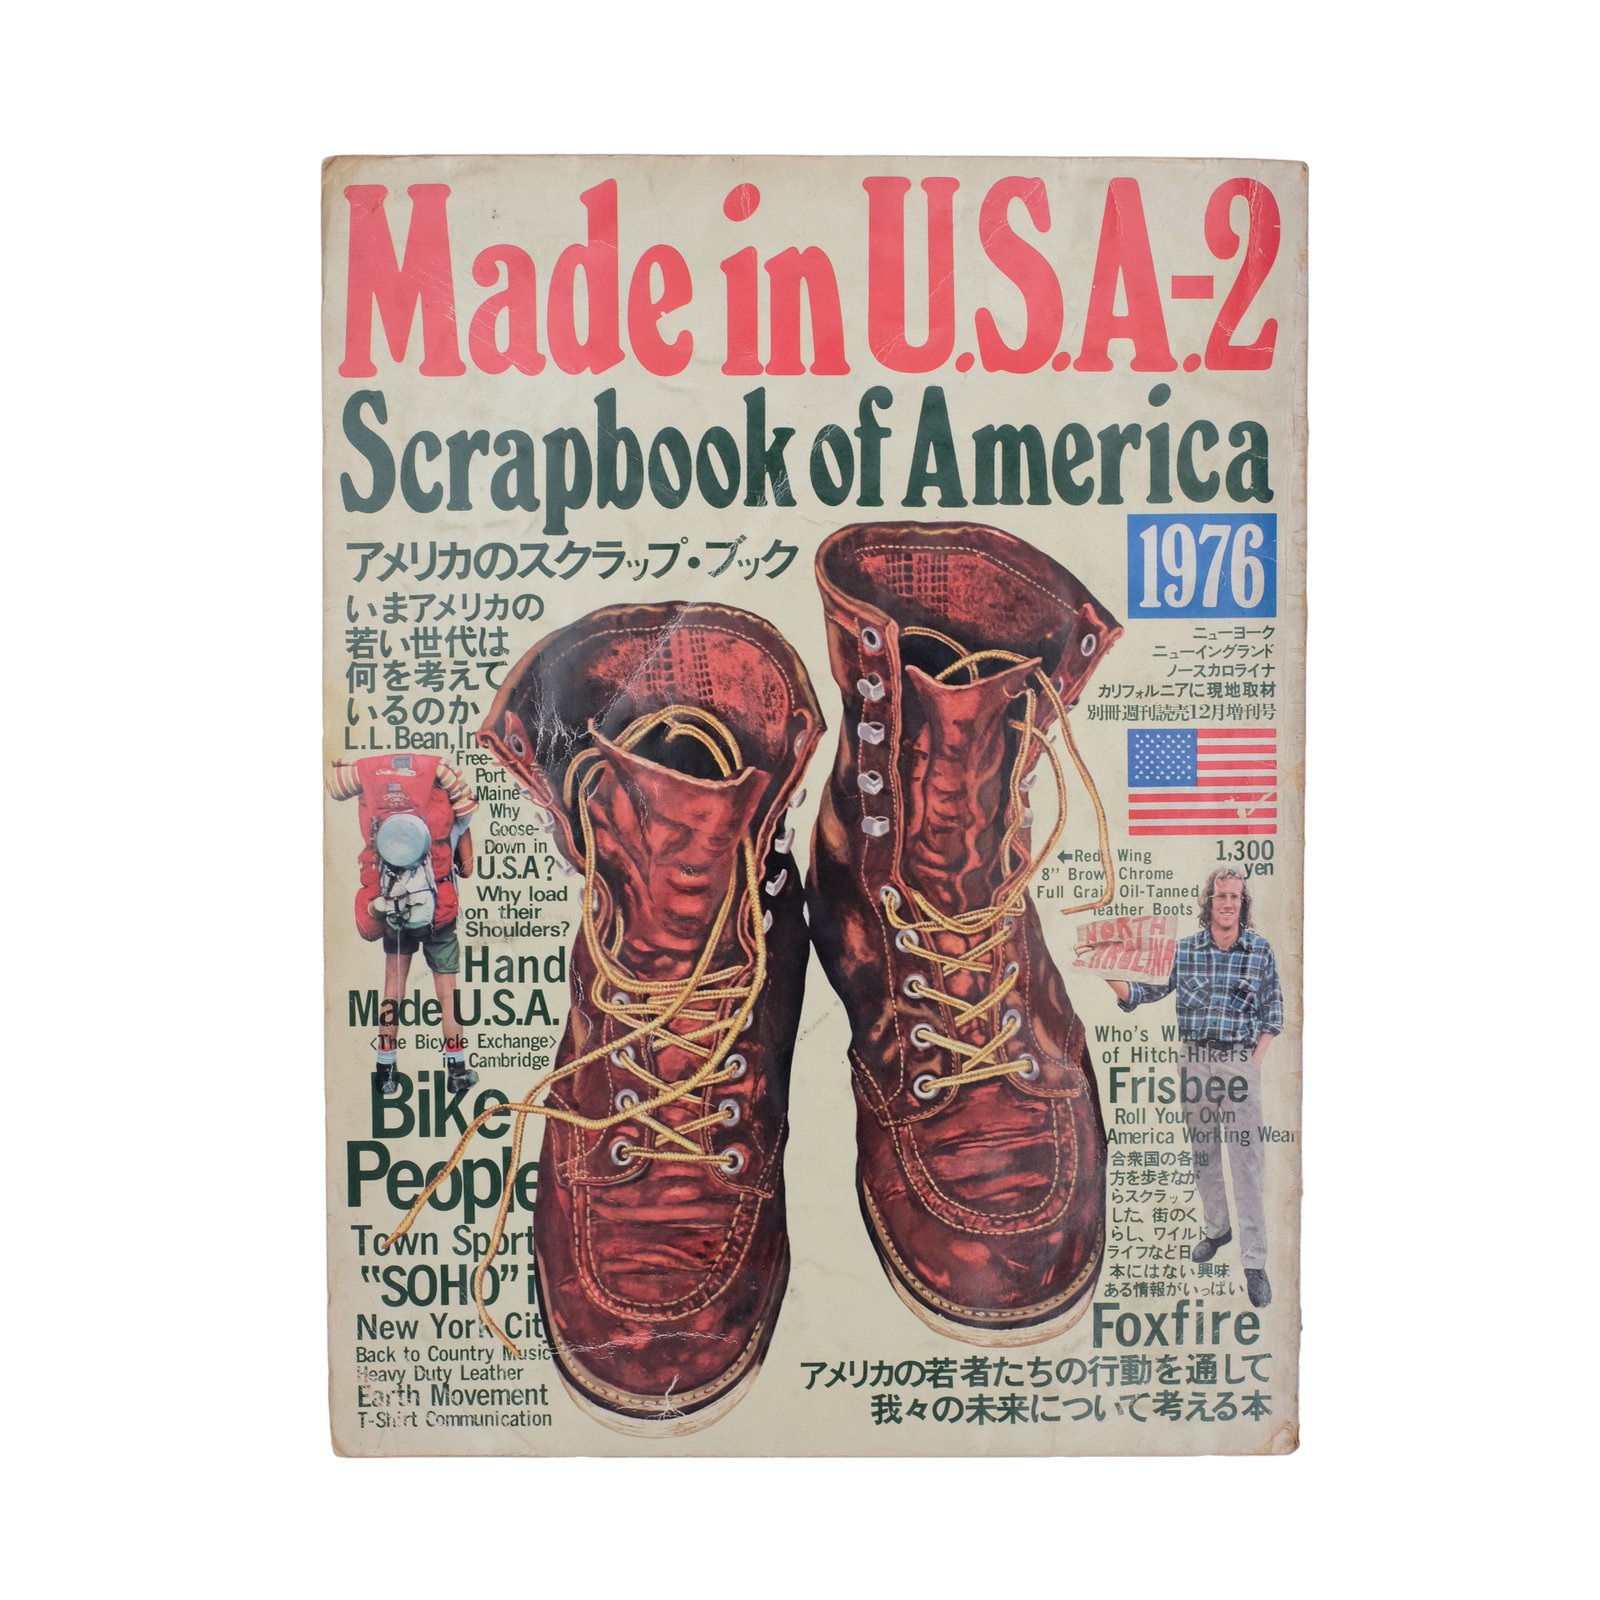 Made in U.S.A-2 Scrapbook of America 1976 | Trim's Vintage